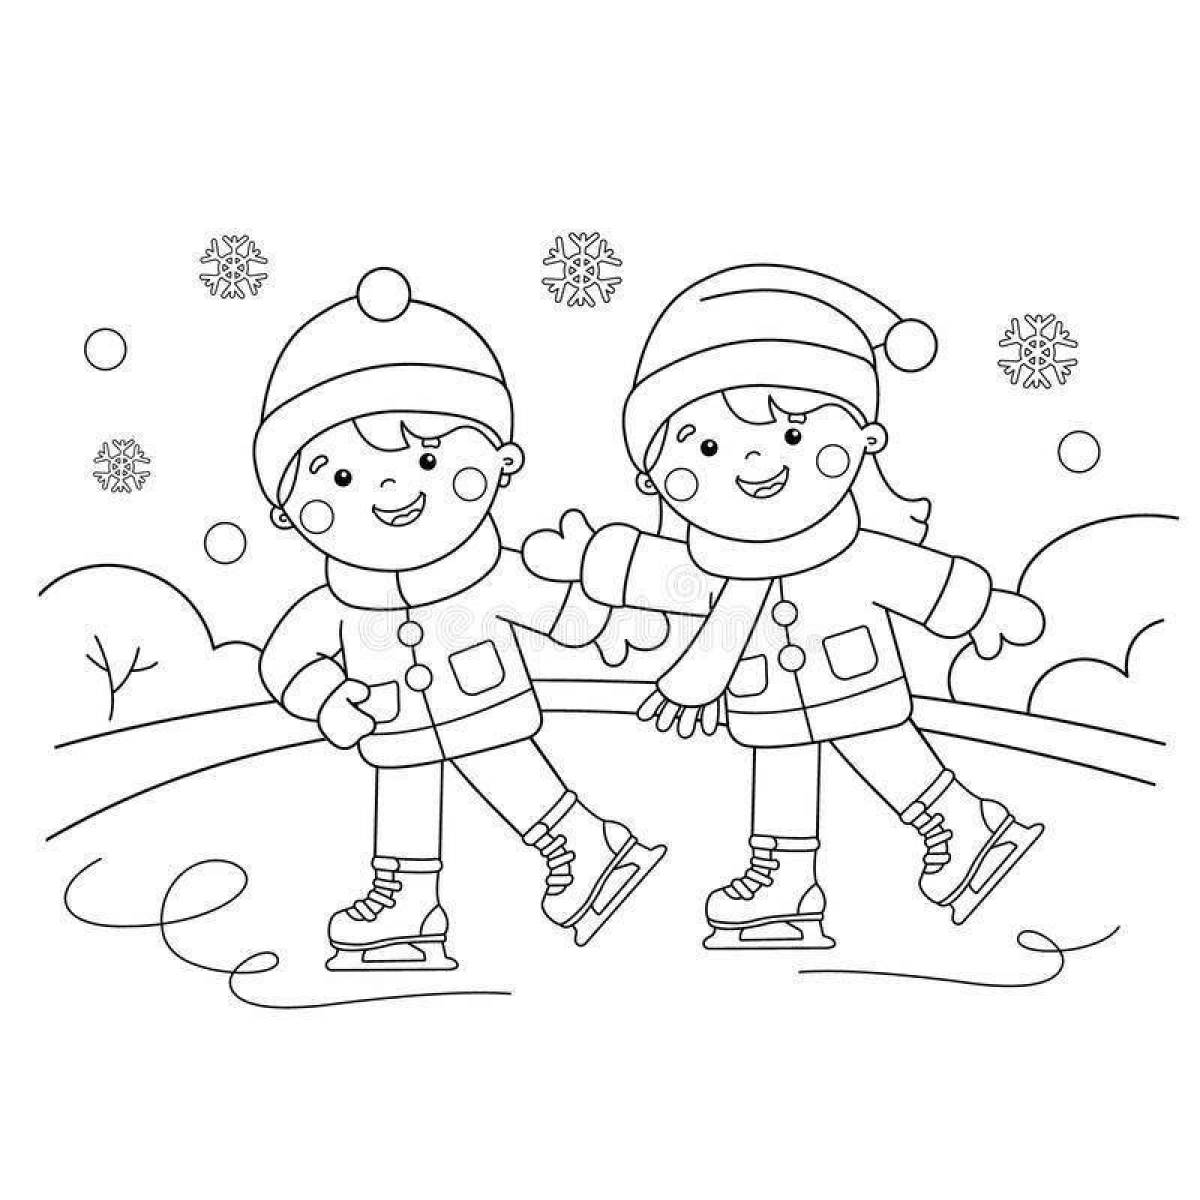 Изысканная картинка зимних видов спорта для детей в детском саду